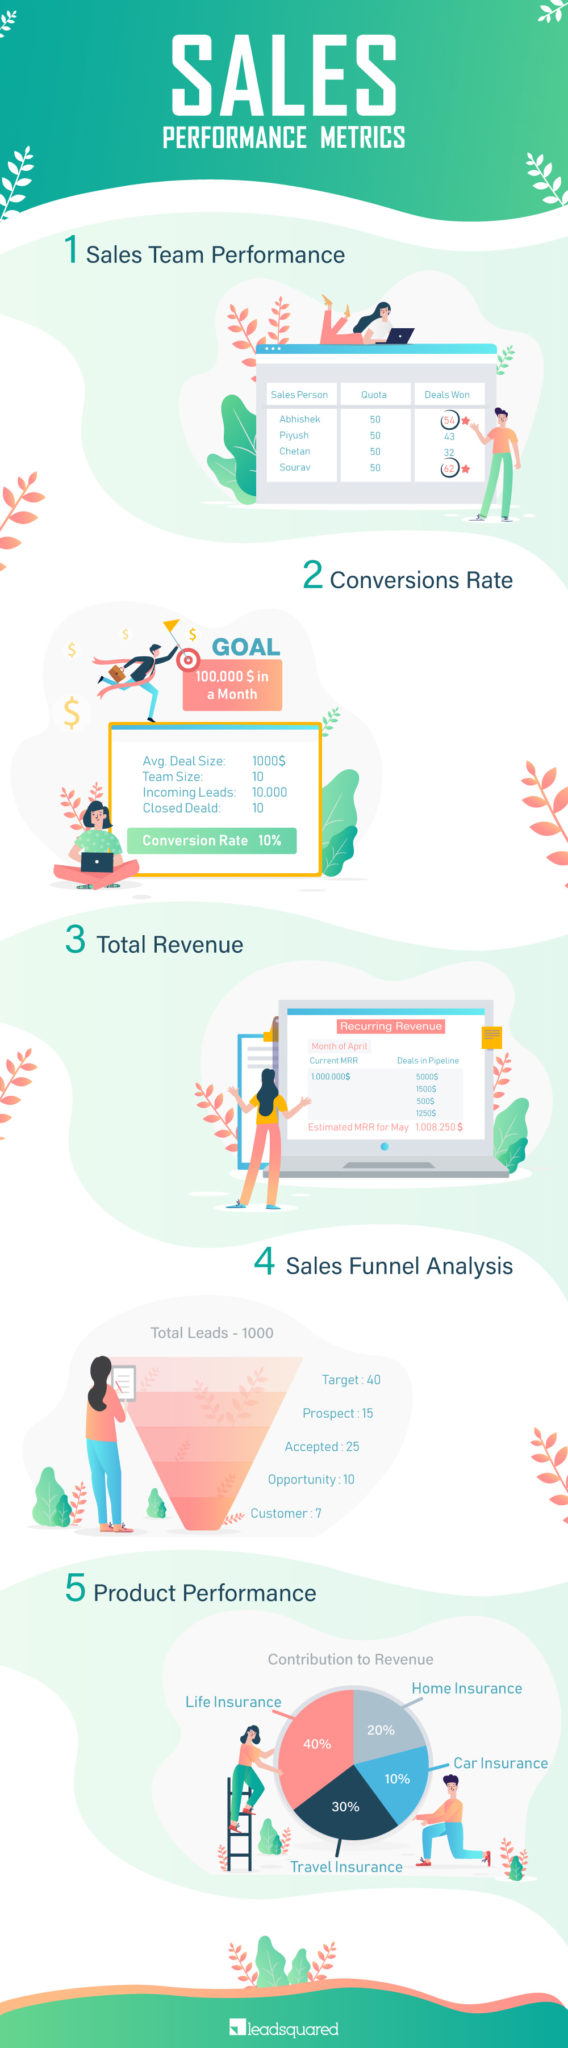 sales performance metrics - infographic